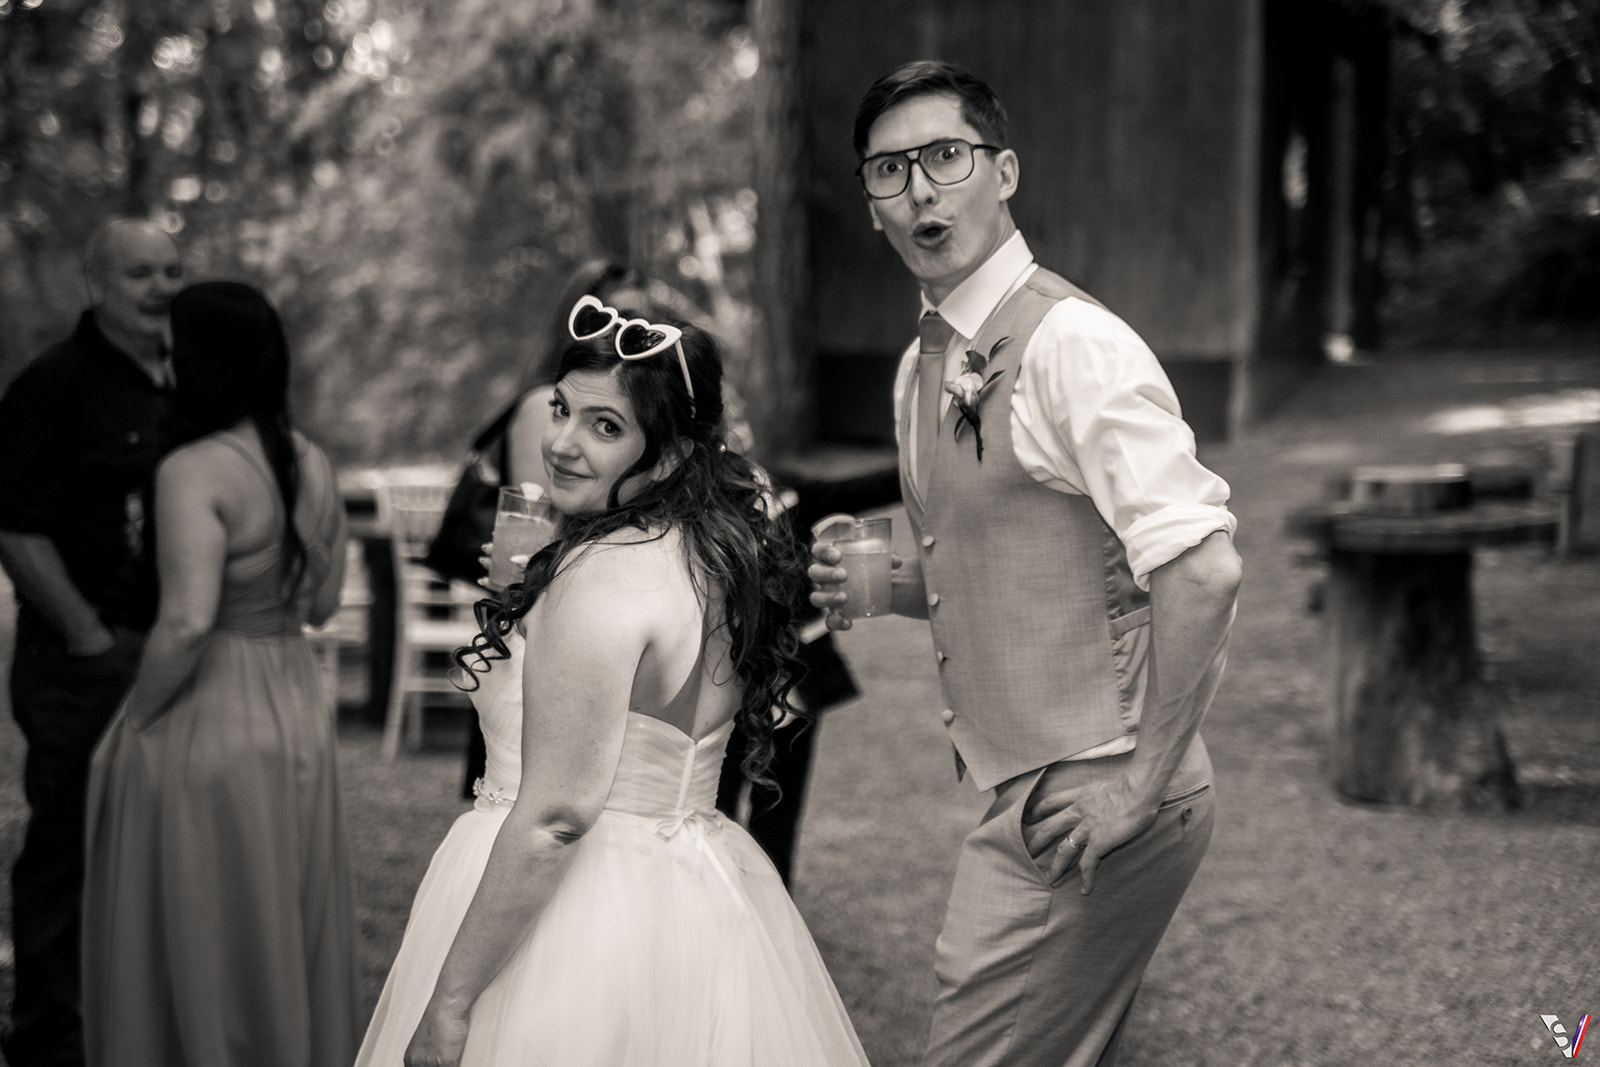 Paparazzi wedding style Photographers Lethbridge and Calgary